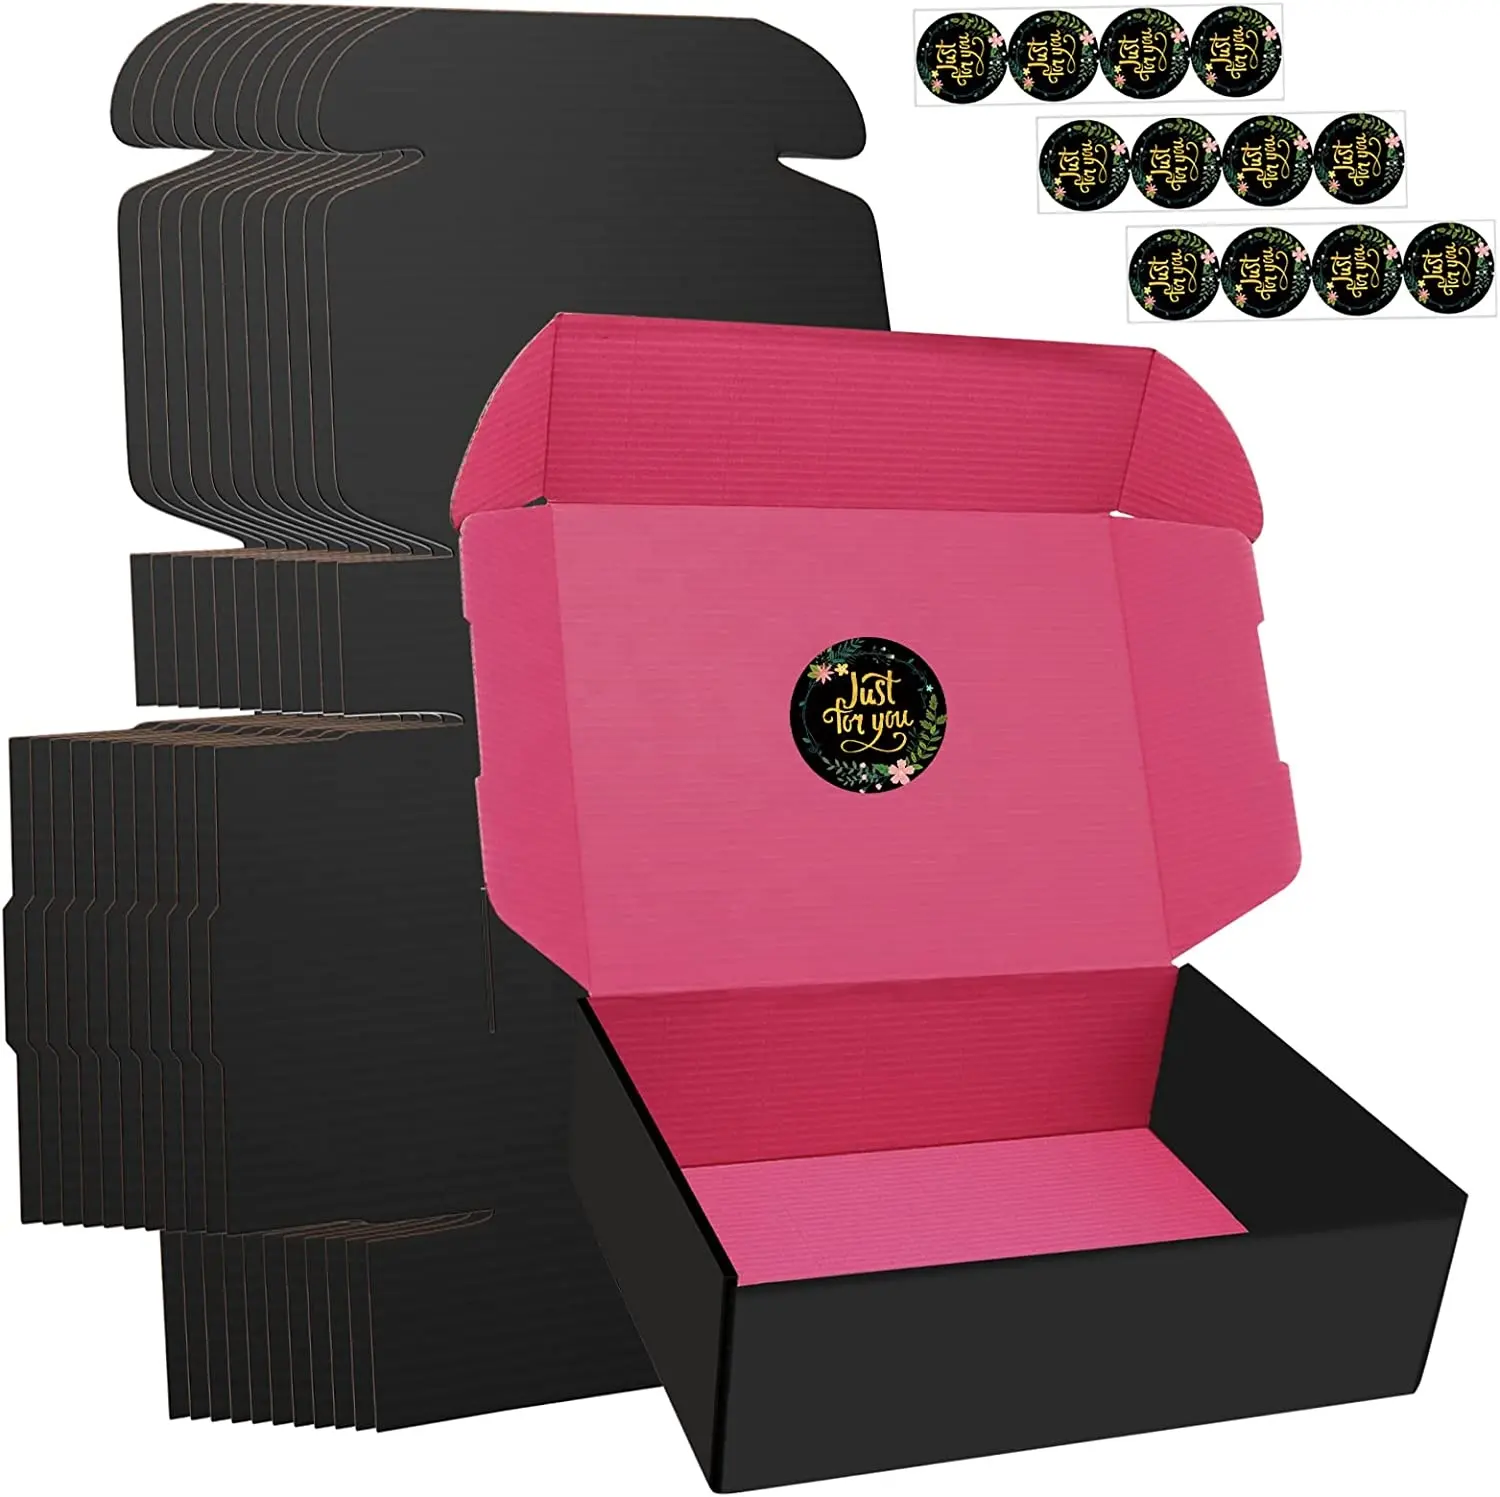 Boîte à bijoux ondulée noire carrée en forme d'avion, boîte à bijoux de luxe colorée à l'intérieur en carton avec Logo, boîte pliable facile